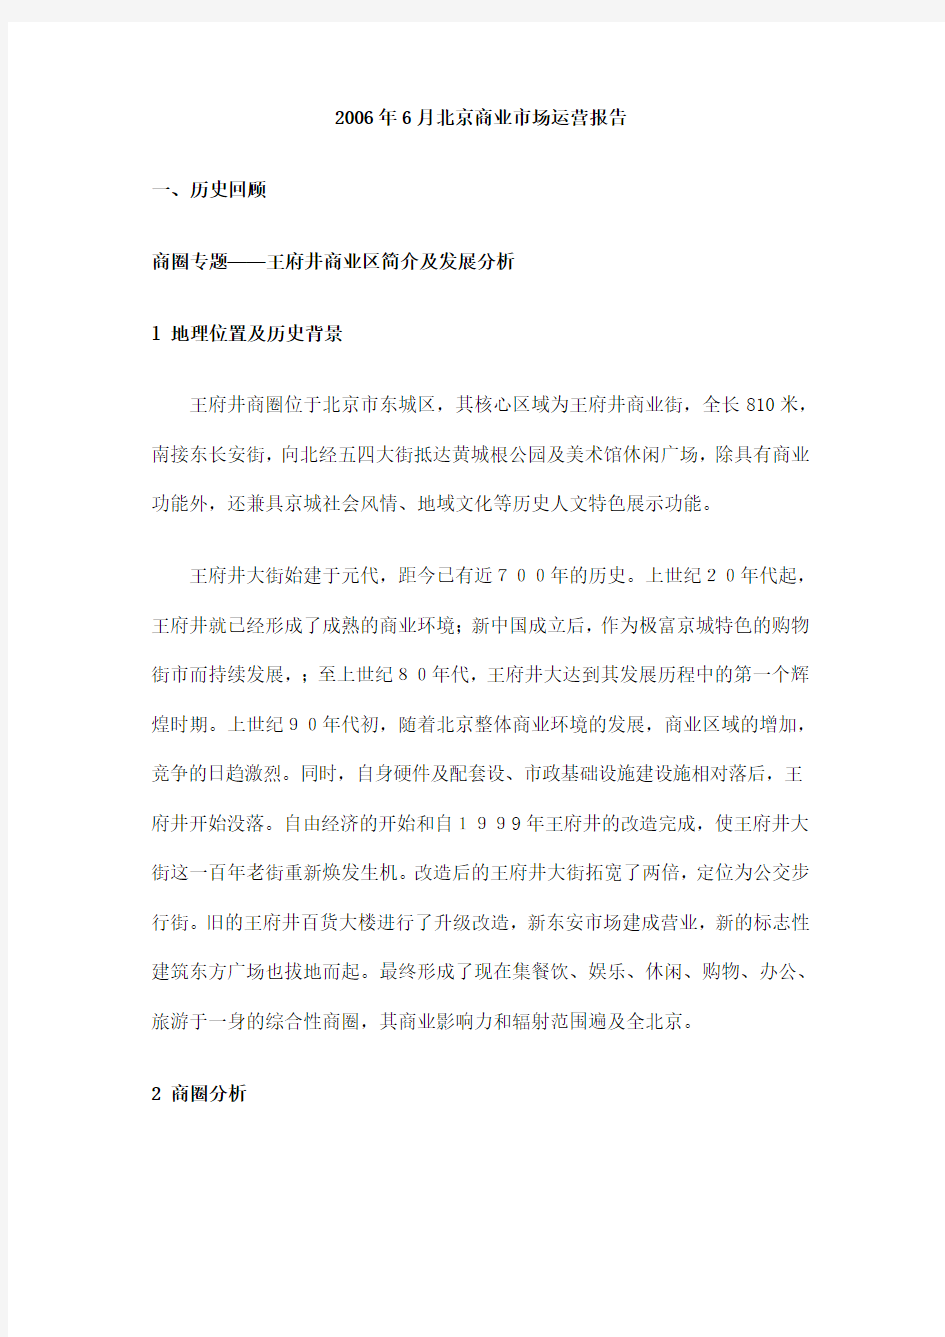 6月北京商业市场运营报告